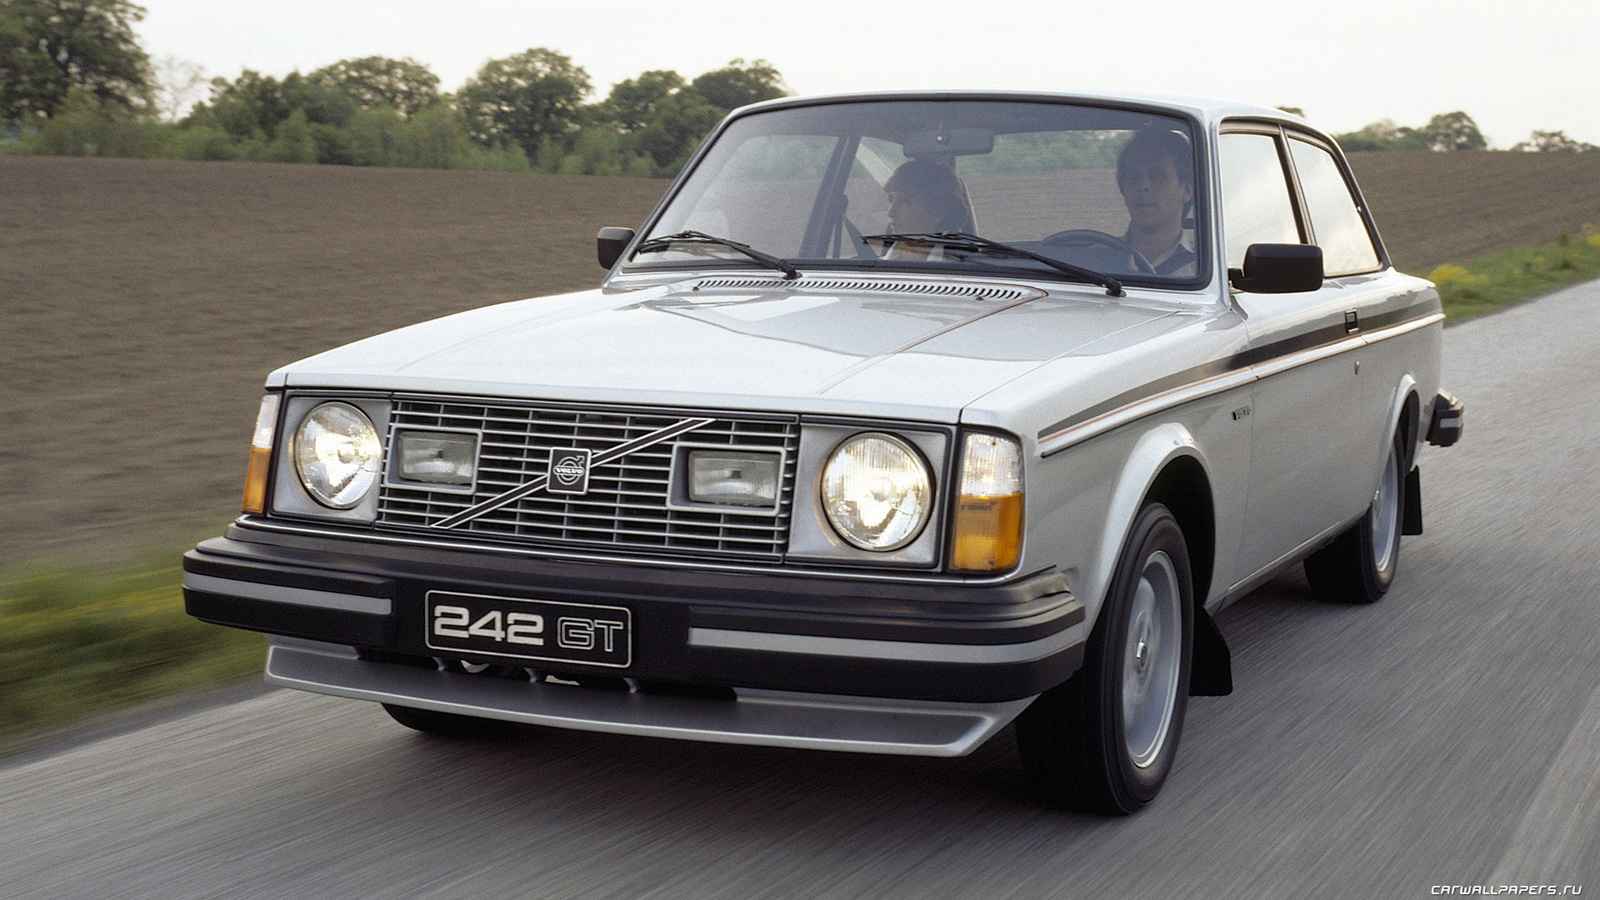 Volvo-242-GT-1978-1981-1600x900-001.jpg